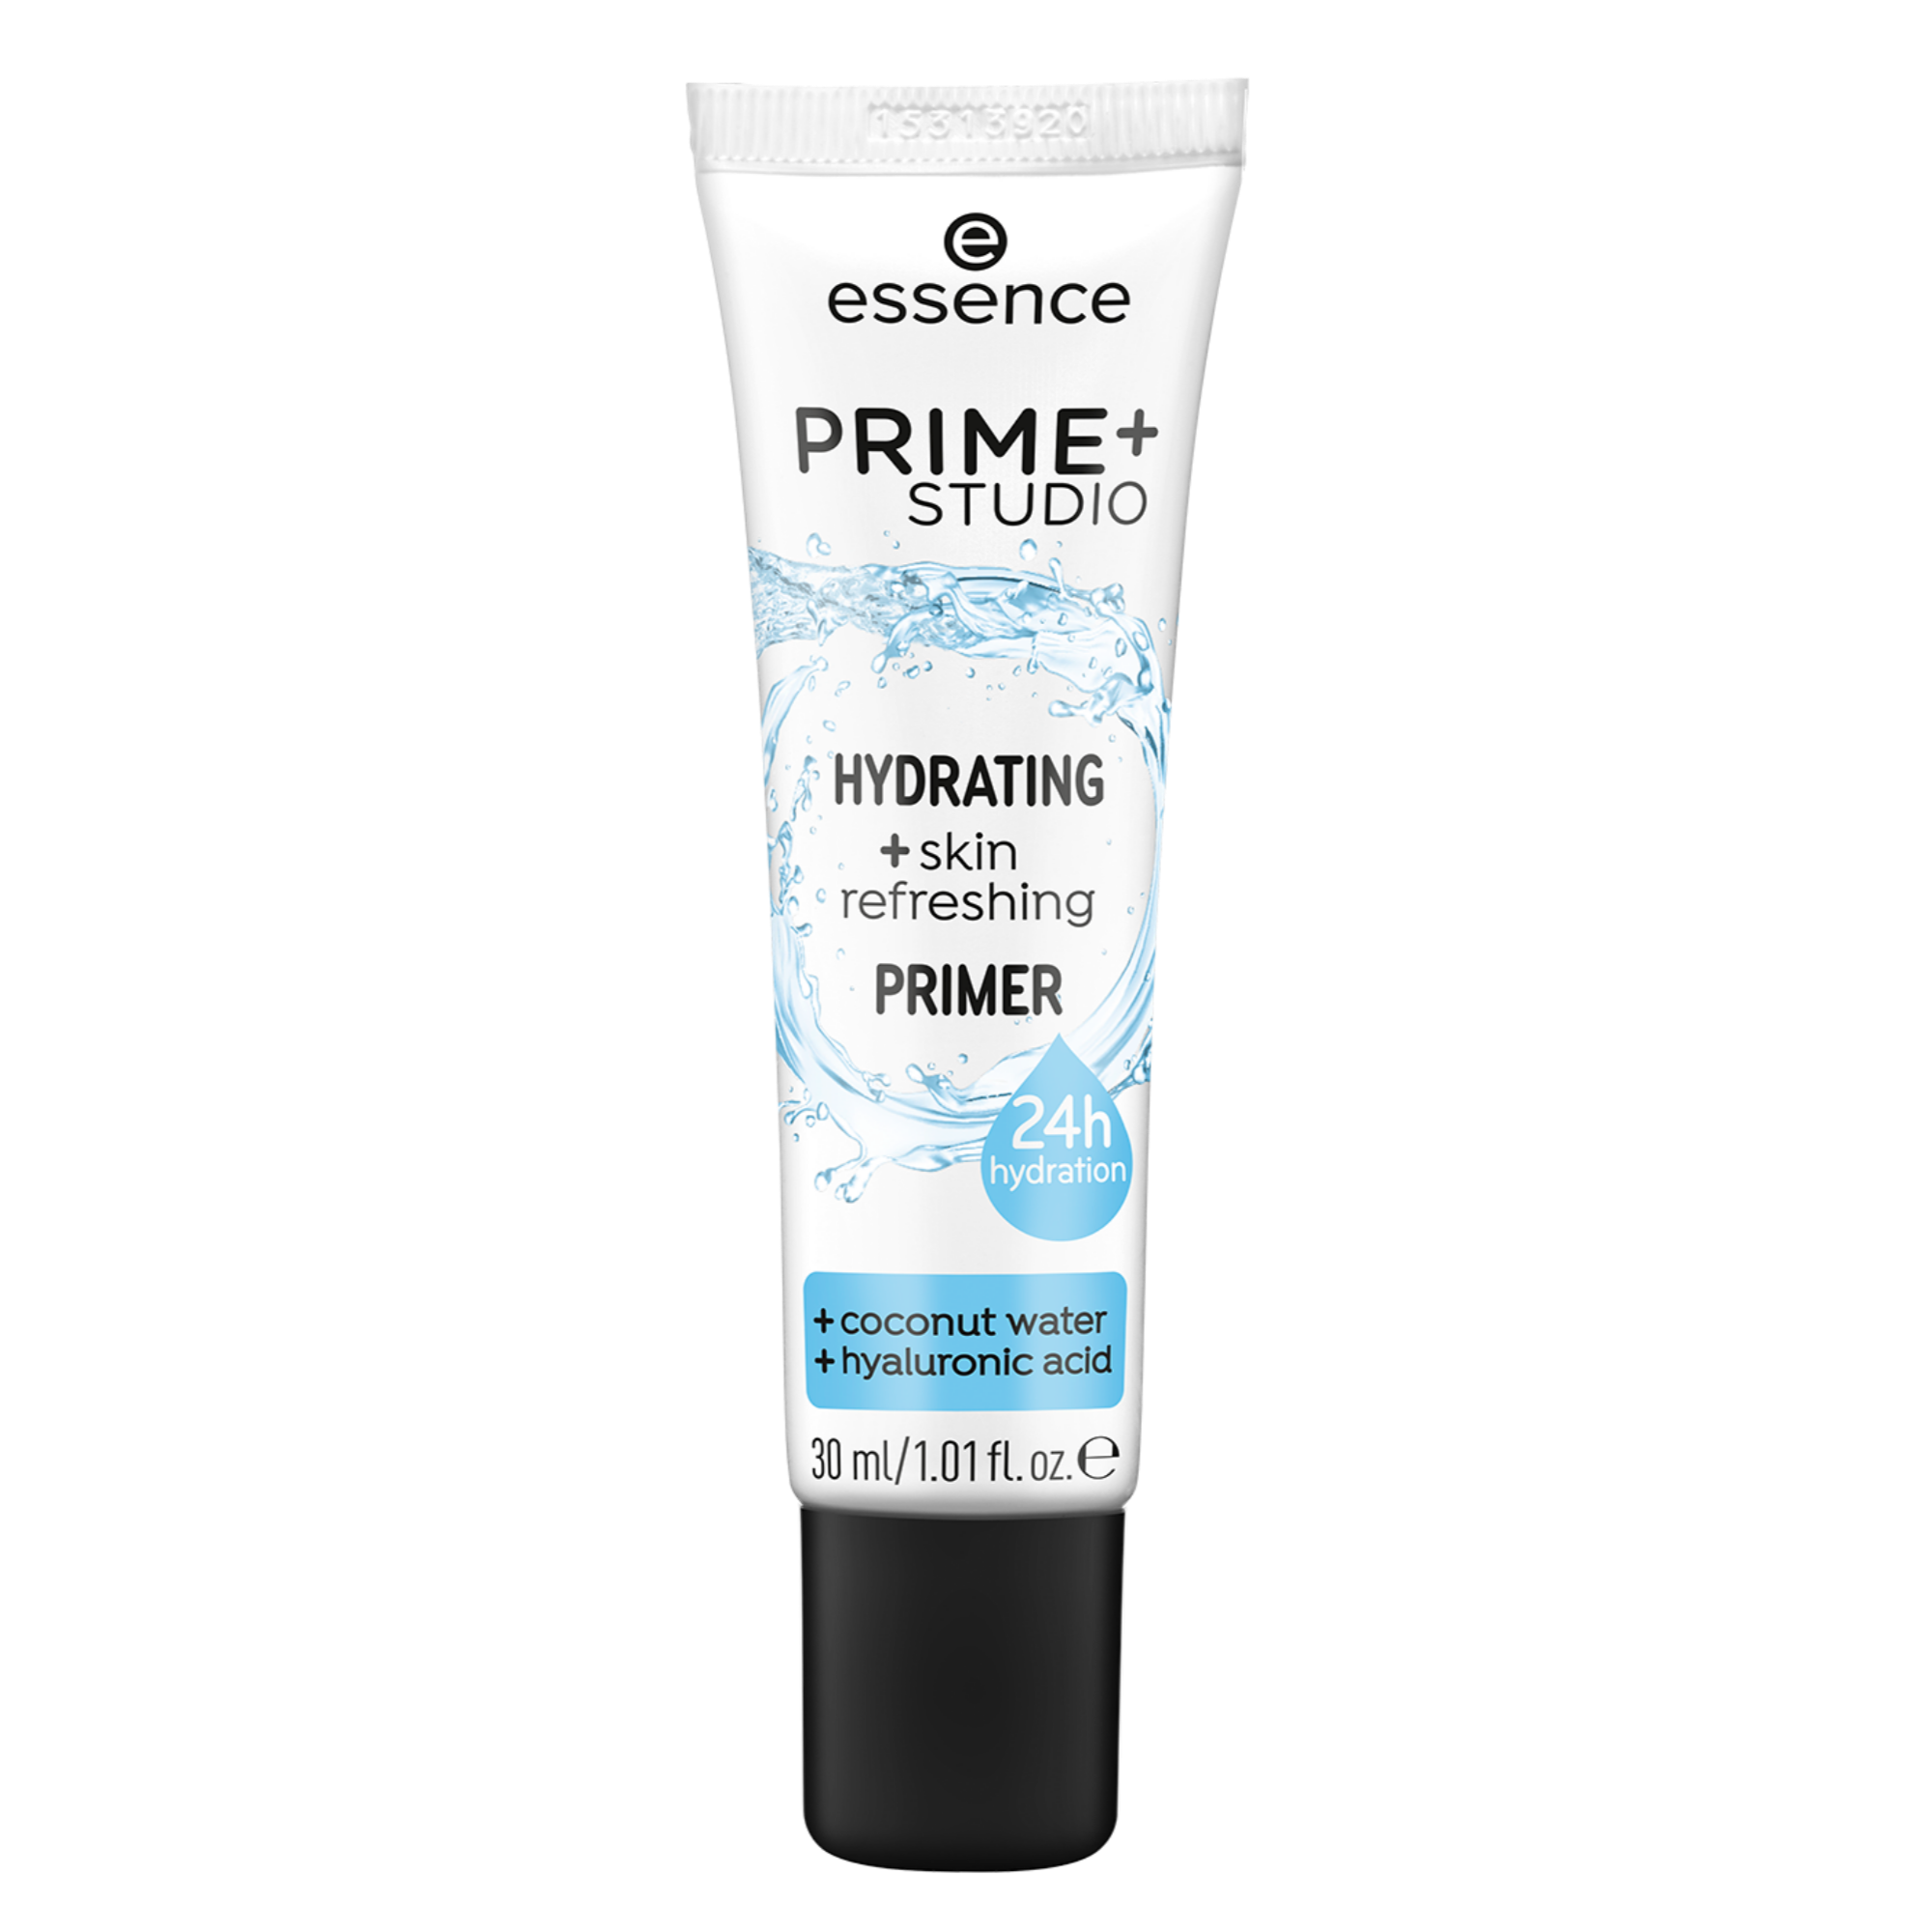 PRIME+ STUDIO HYDRATING+ skin refreshing primer hydratant et rafraîchissant